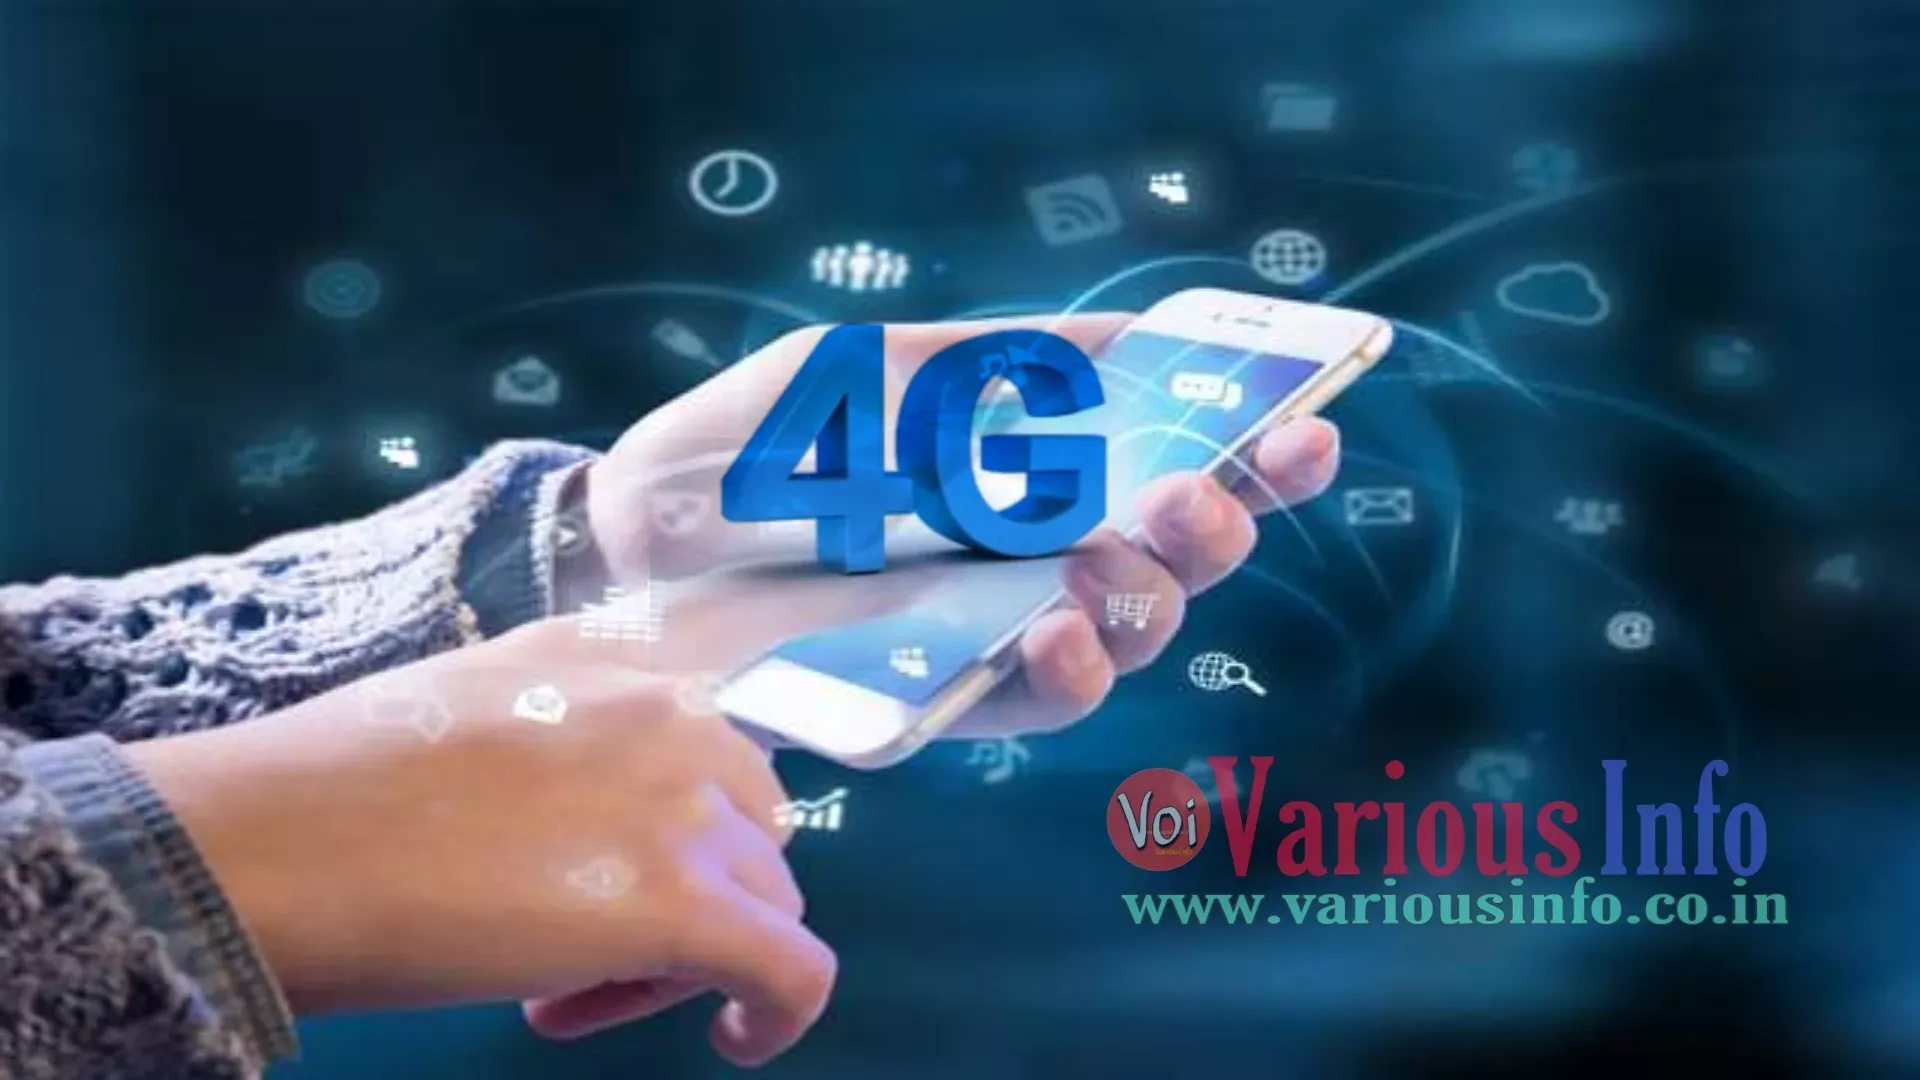 4G का क्या मतलब है? 4G की शुरुआत कब हुई? 5G का मतलब क्या है? 3G 4G क्या है? भारत में 4G कब लांच हुआ? भारत का पहला 4G नेटवर्क कौन सा है? भारत में 3G कब लांच हुआ? इंडिया में 5G लॉन्च कब होगा? इंडिया में 5G नेटवर्क कब आएगा? इंडिया का सबसे फास्ट नेटवर्क कौन सा है 2019?